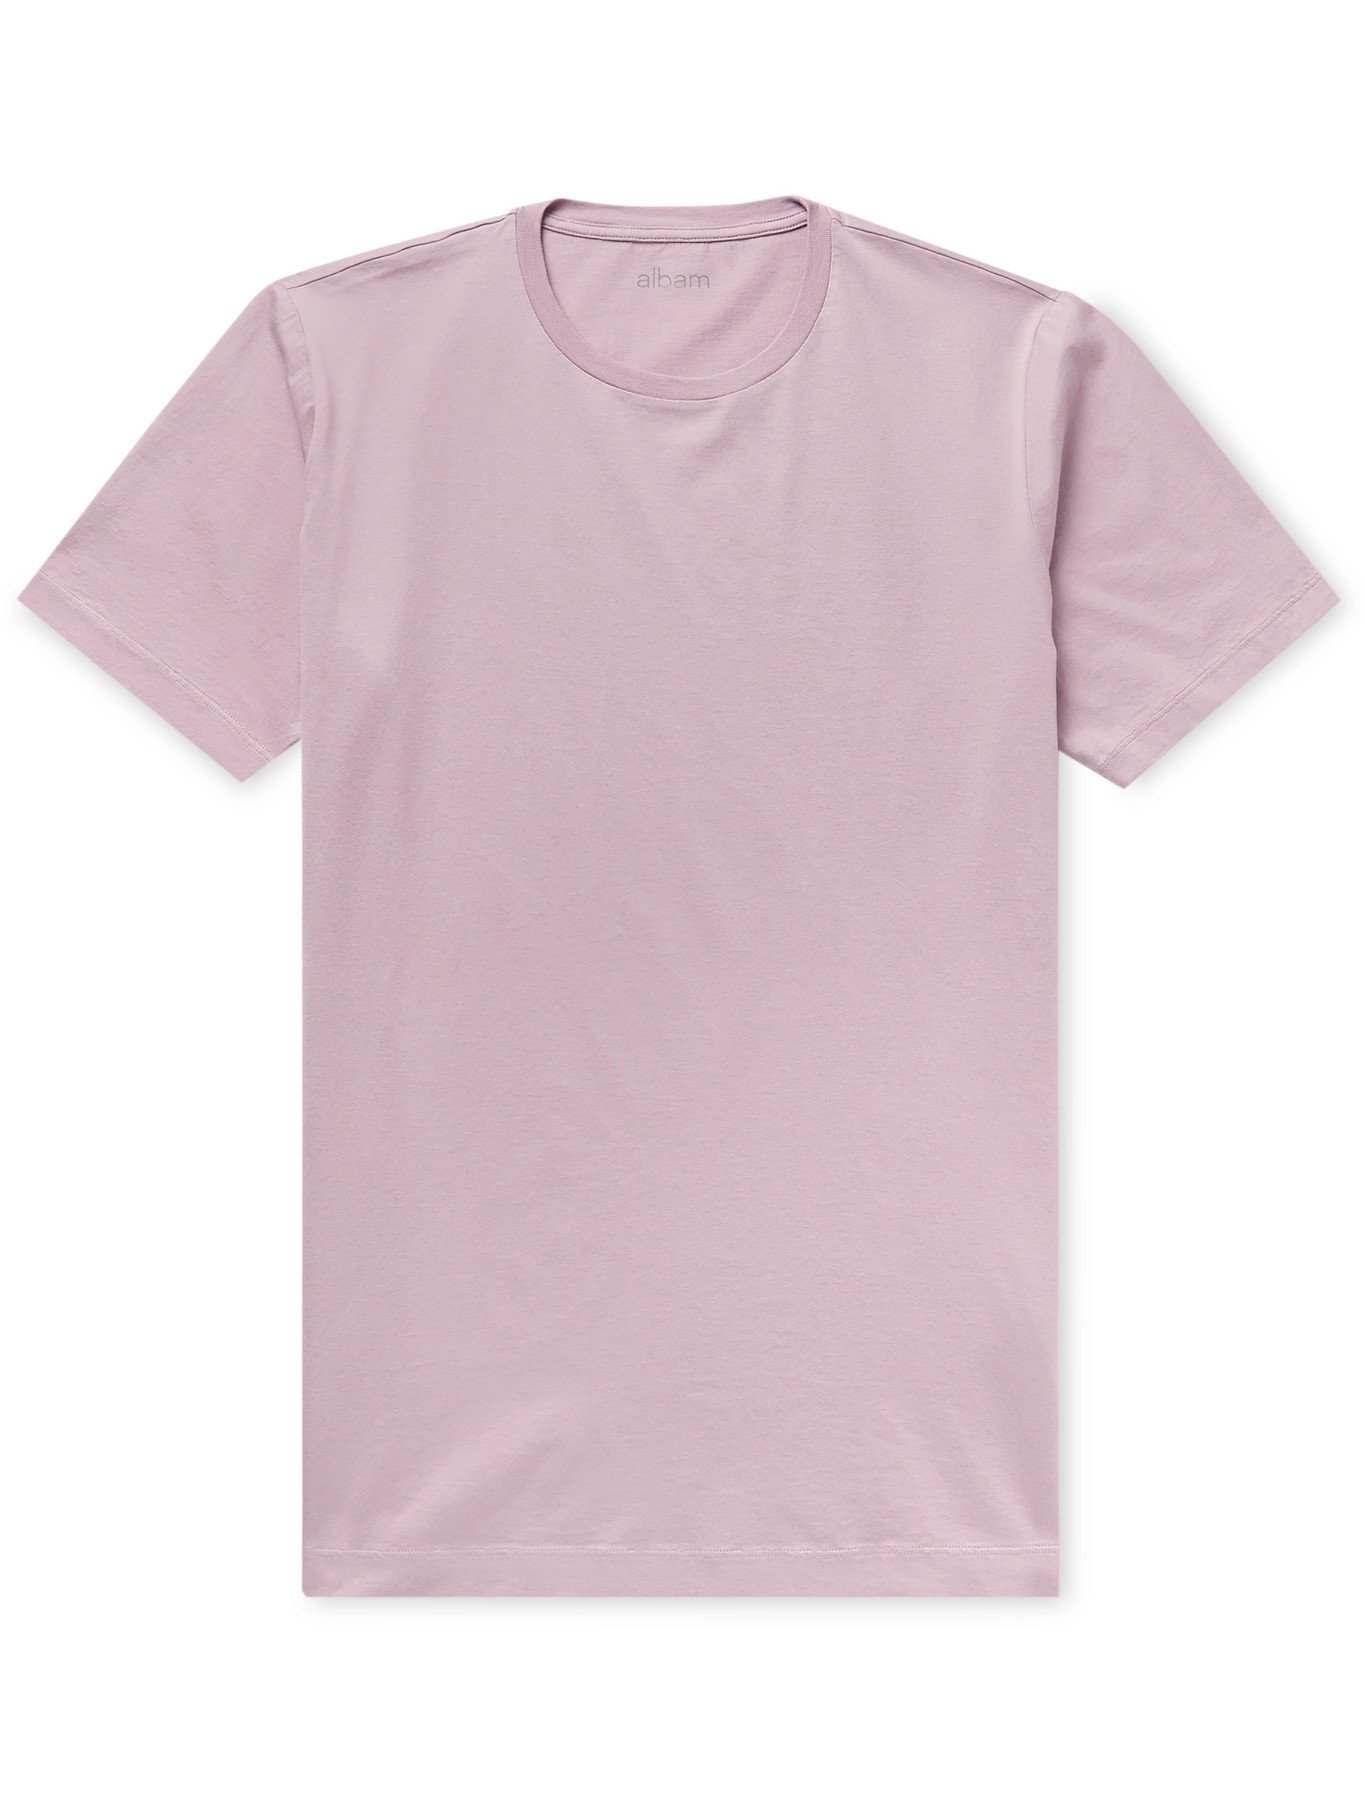 Albam - Cotton-Jersey T-Shirt - Pink - XL Albam